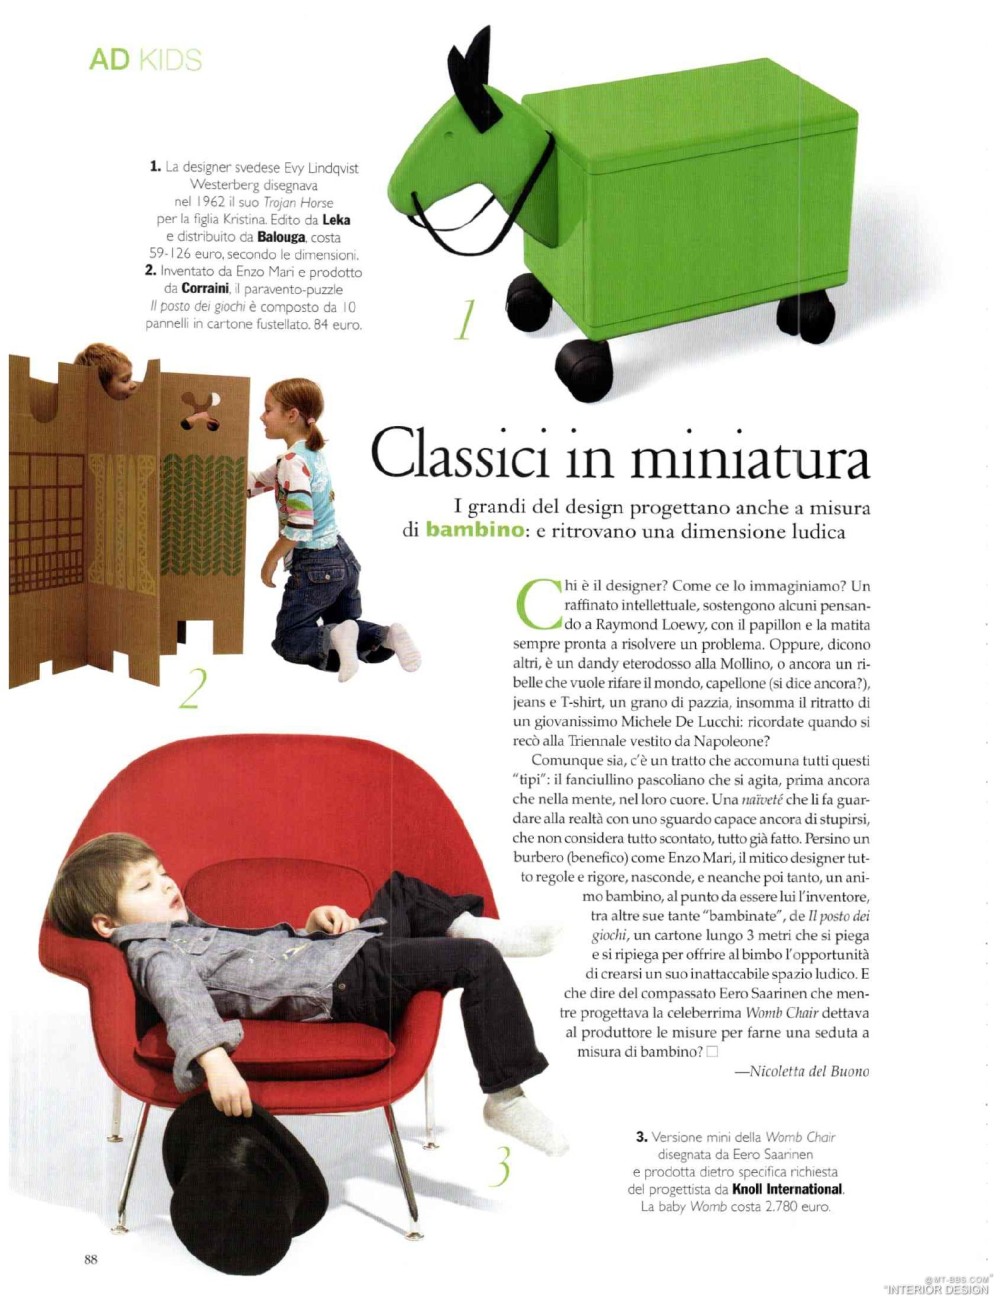 意大利AD 杂志 2012年全年JPG高清版本 全免（上传完毕）_0088.jpg